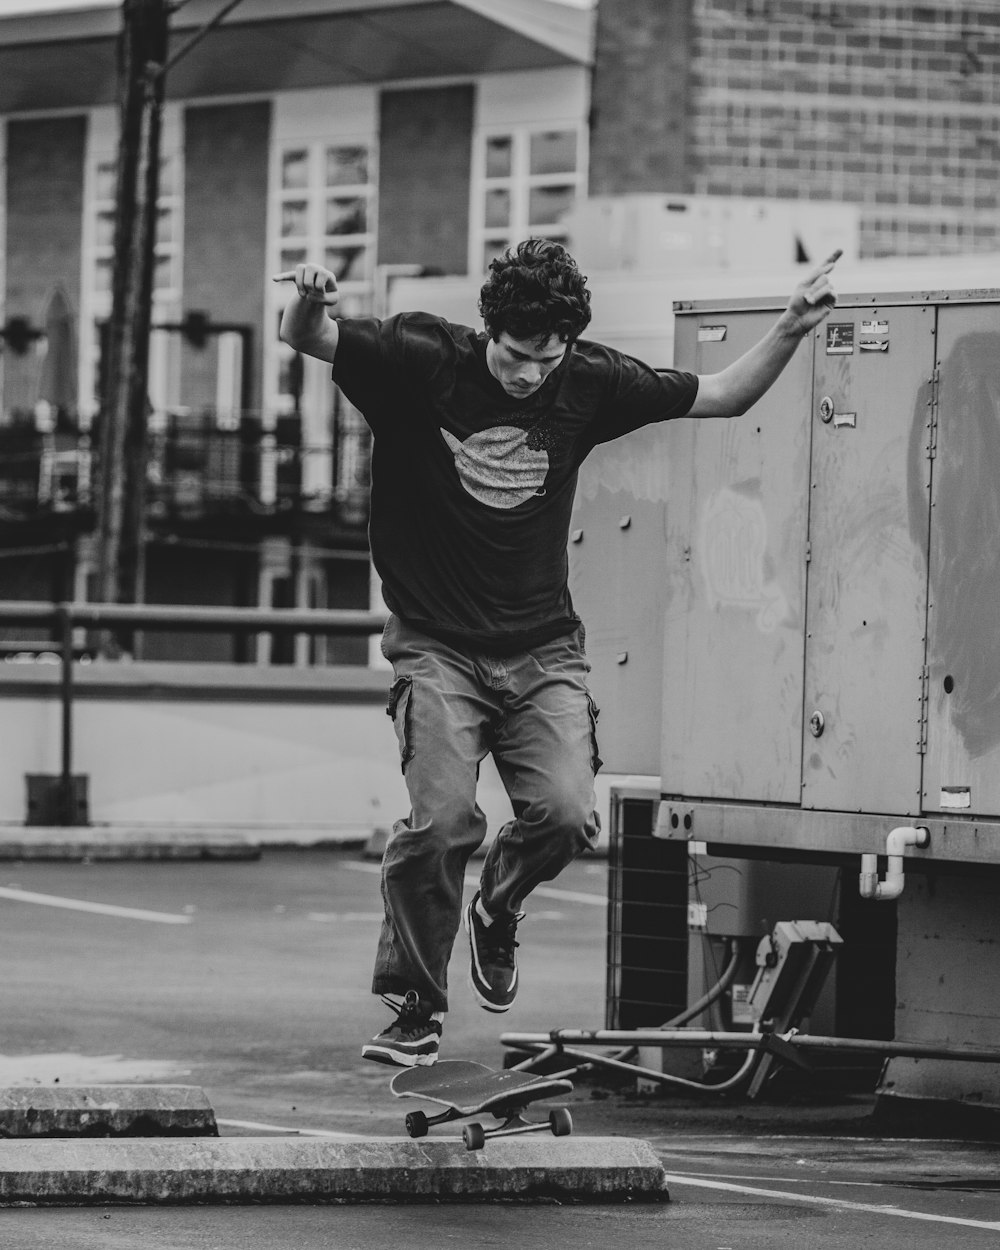 Mann in schwarzem T-Shirt und brauner Hose springt auf Skateboard in Graustufenfotografie